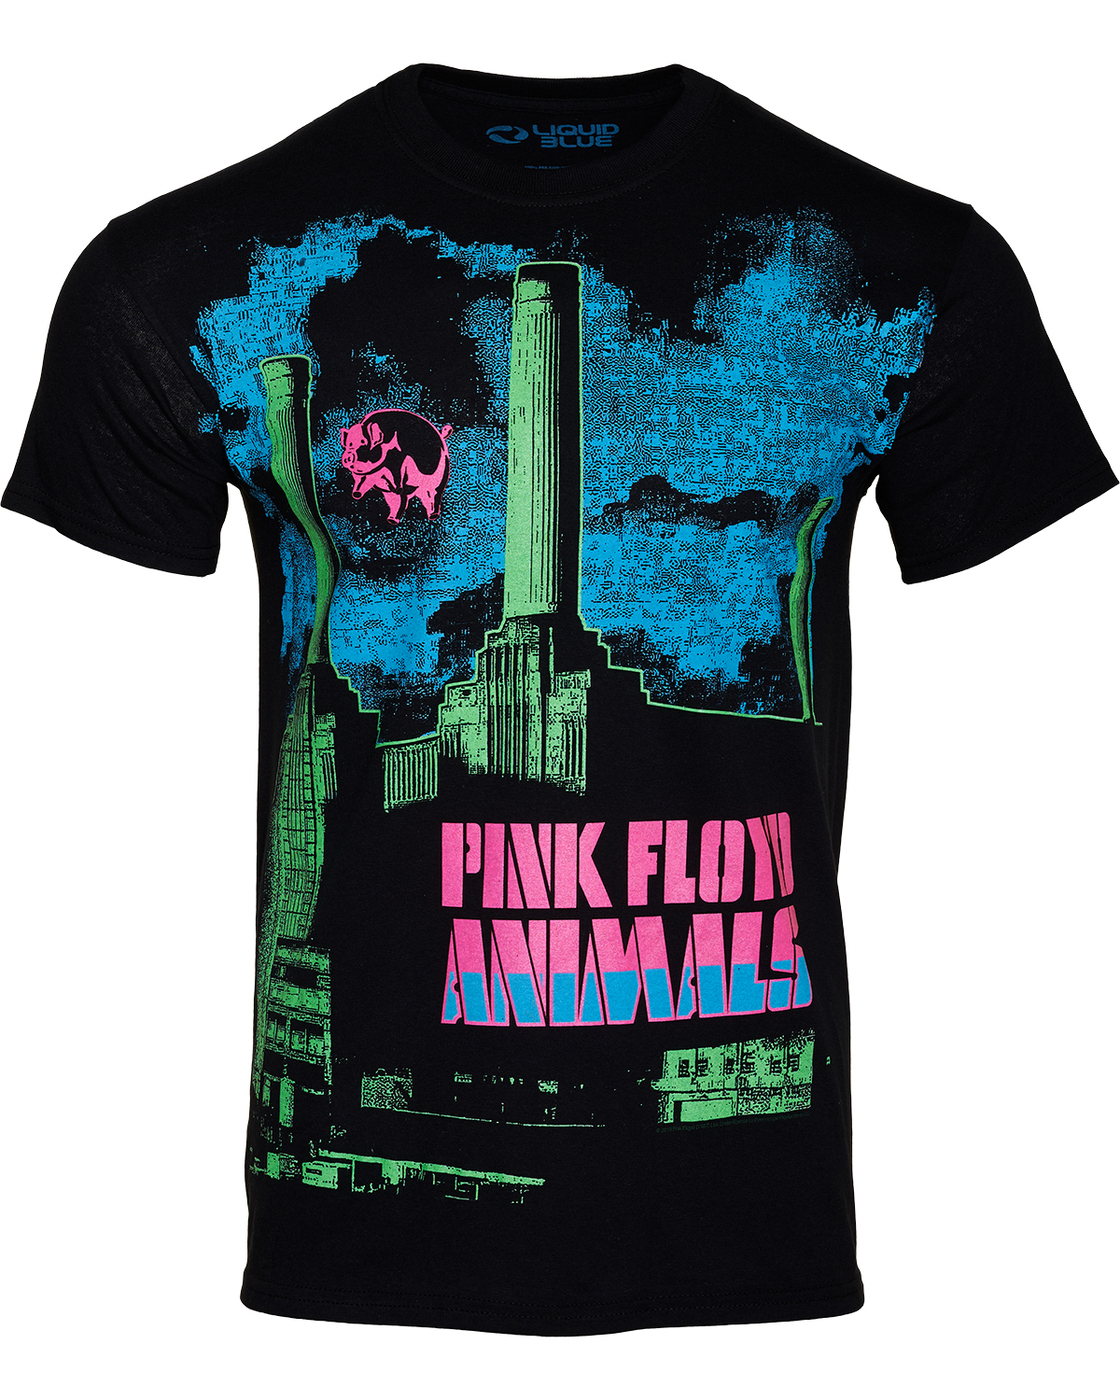 Liquid Blue футболки. Футболка Pink Floyd animals. Американские футболки Ликвид Блю. Блю принт. Жидкая одежда купить